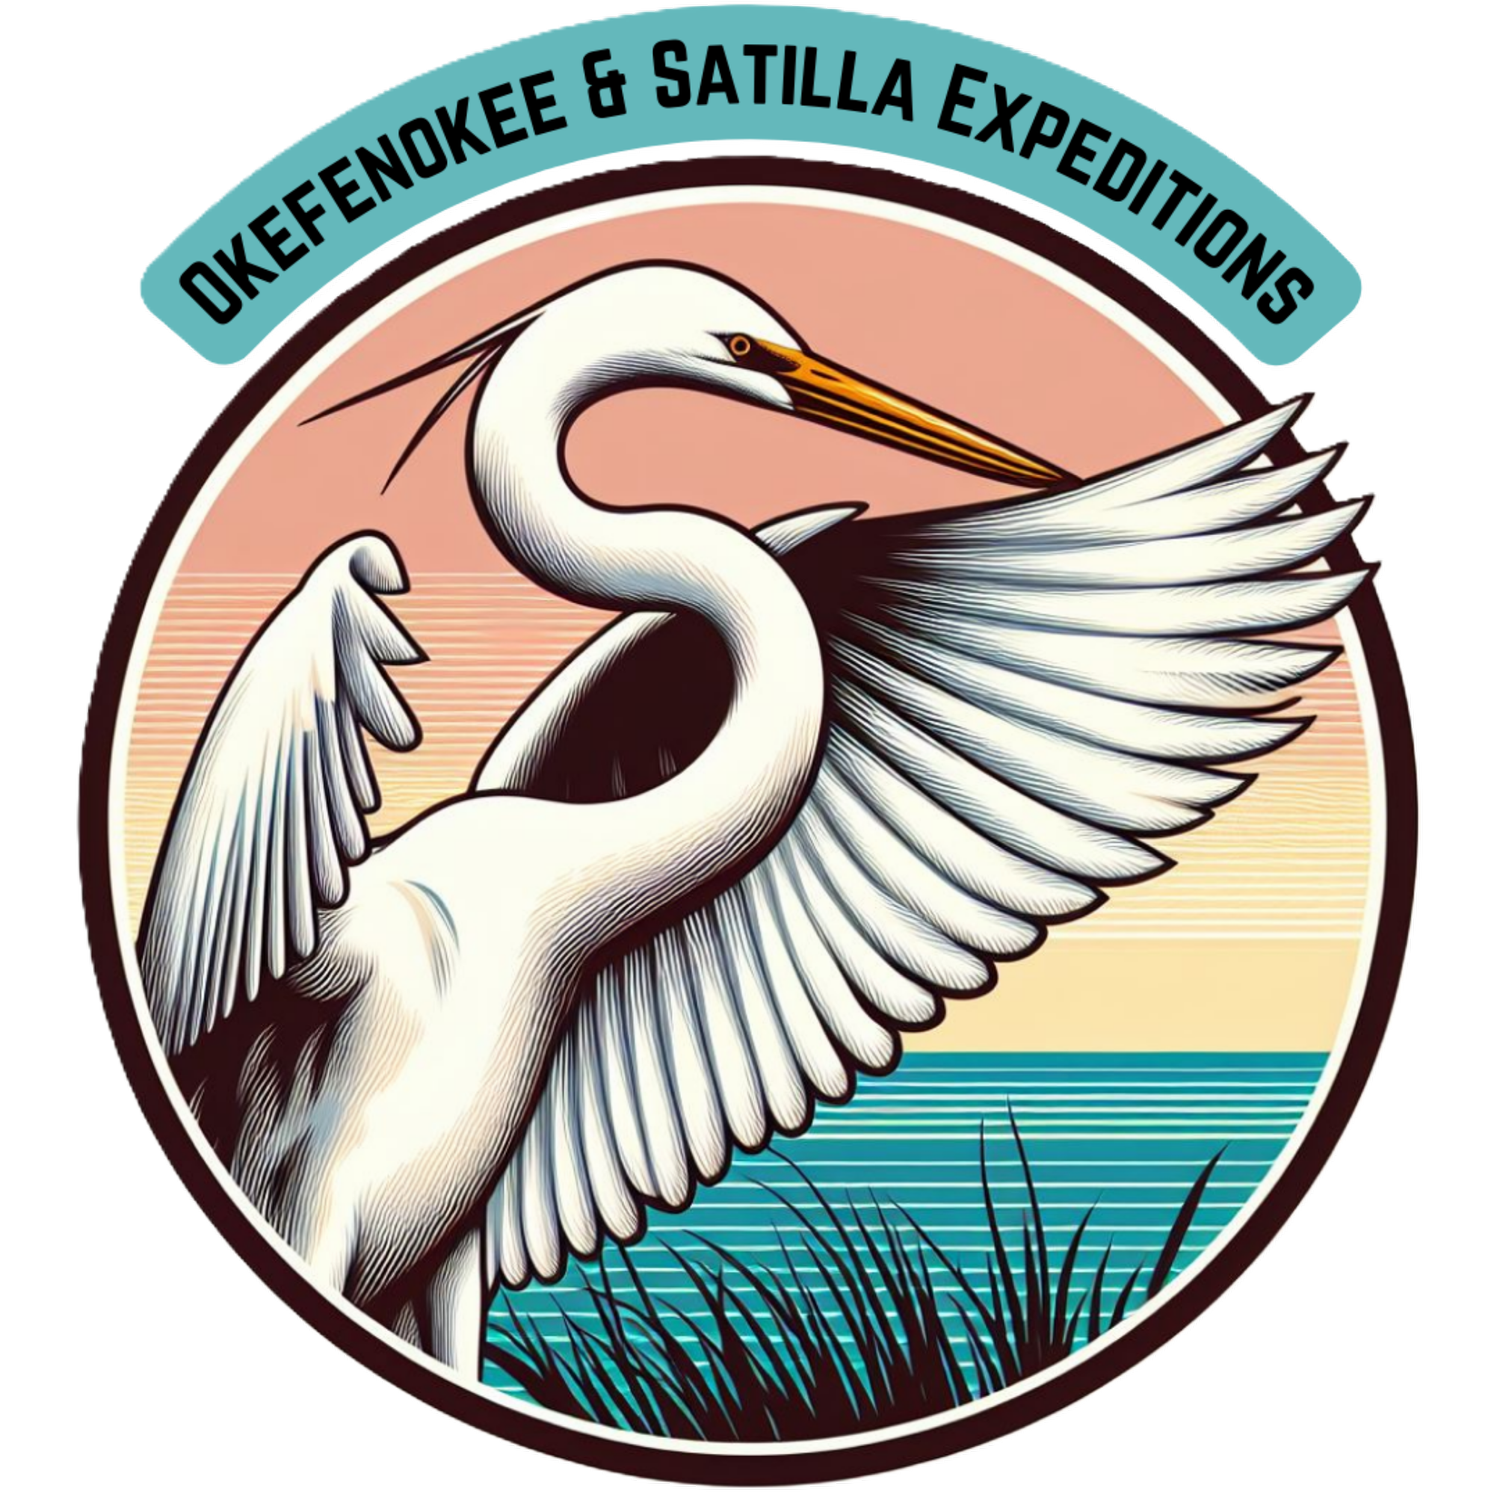 Okefenokee &amp; Satilla Expeditions